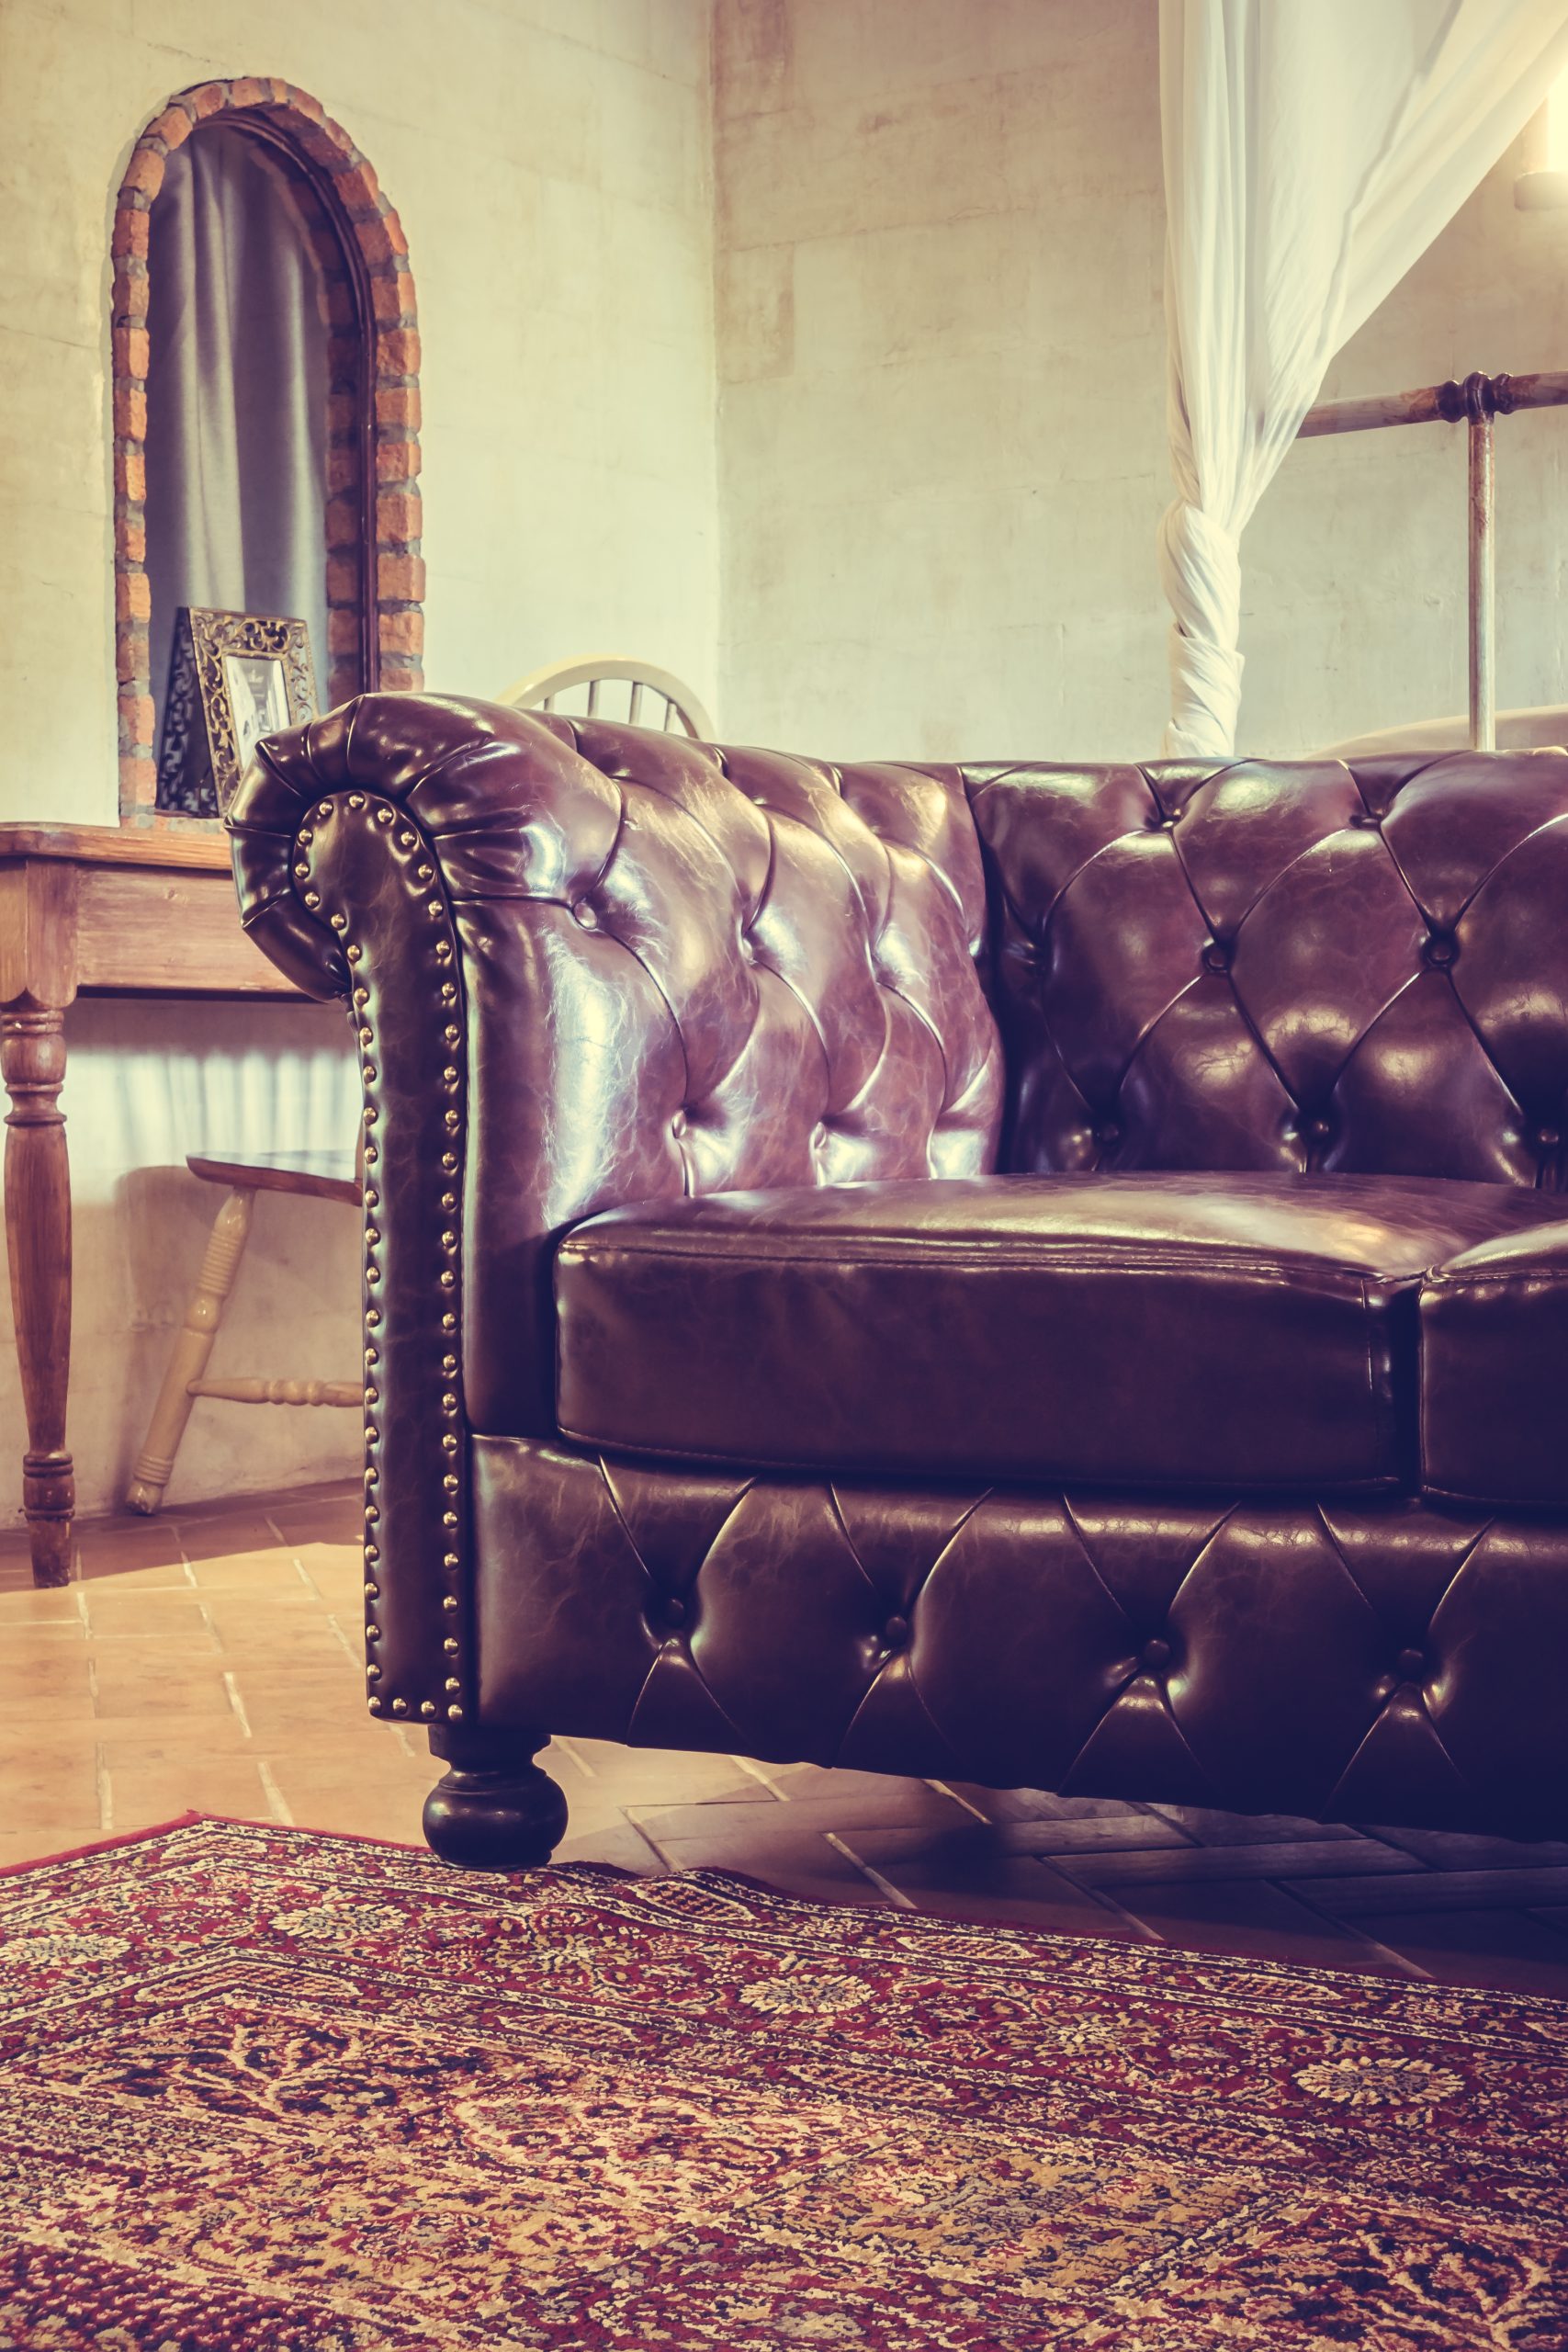 Vintage leather sofa decoration in livingroom interior - Vintage Filter